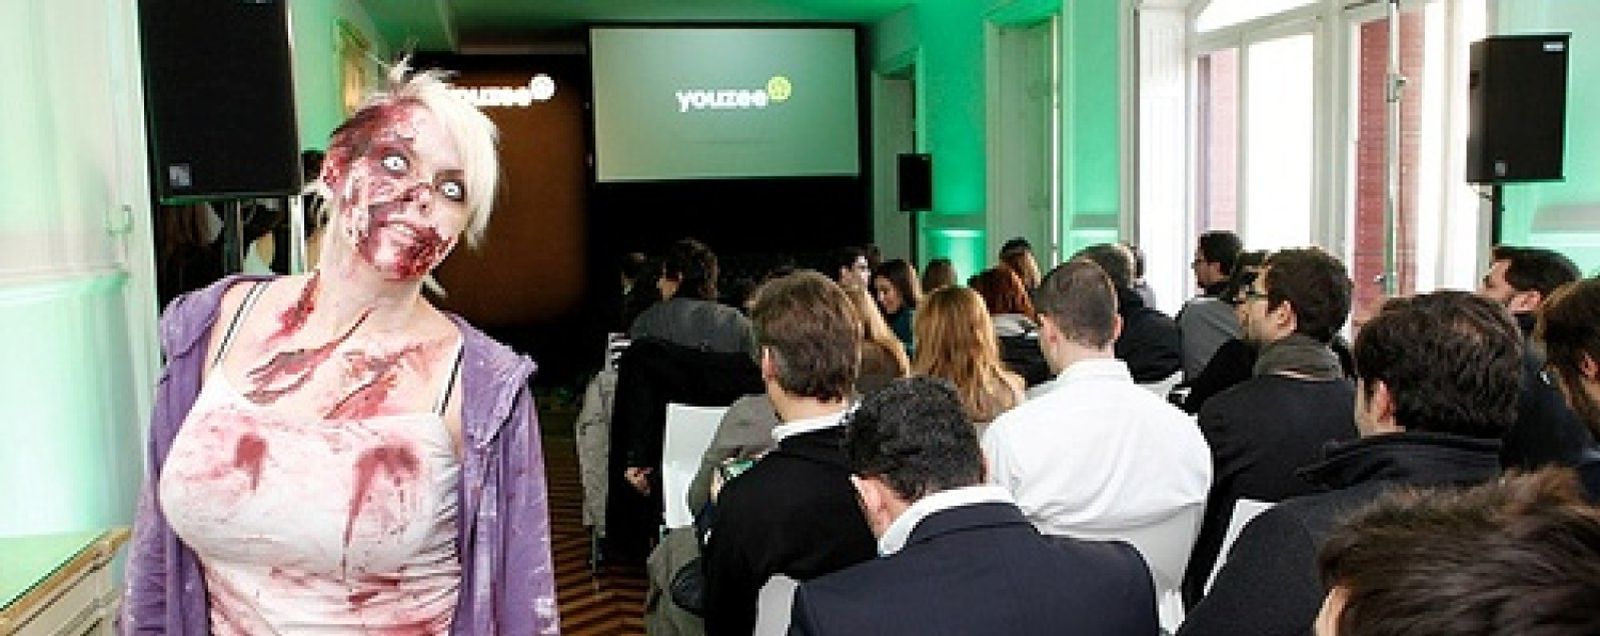 Foto: Yelmo Cines lanza el 'videoclub' online Youzee